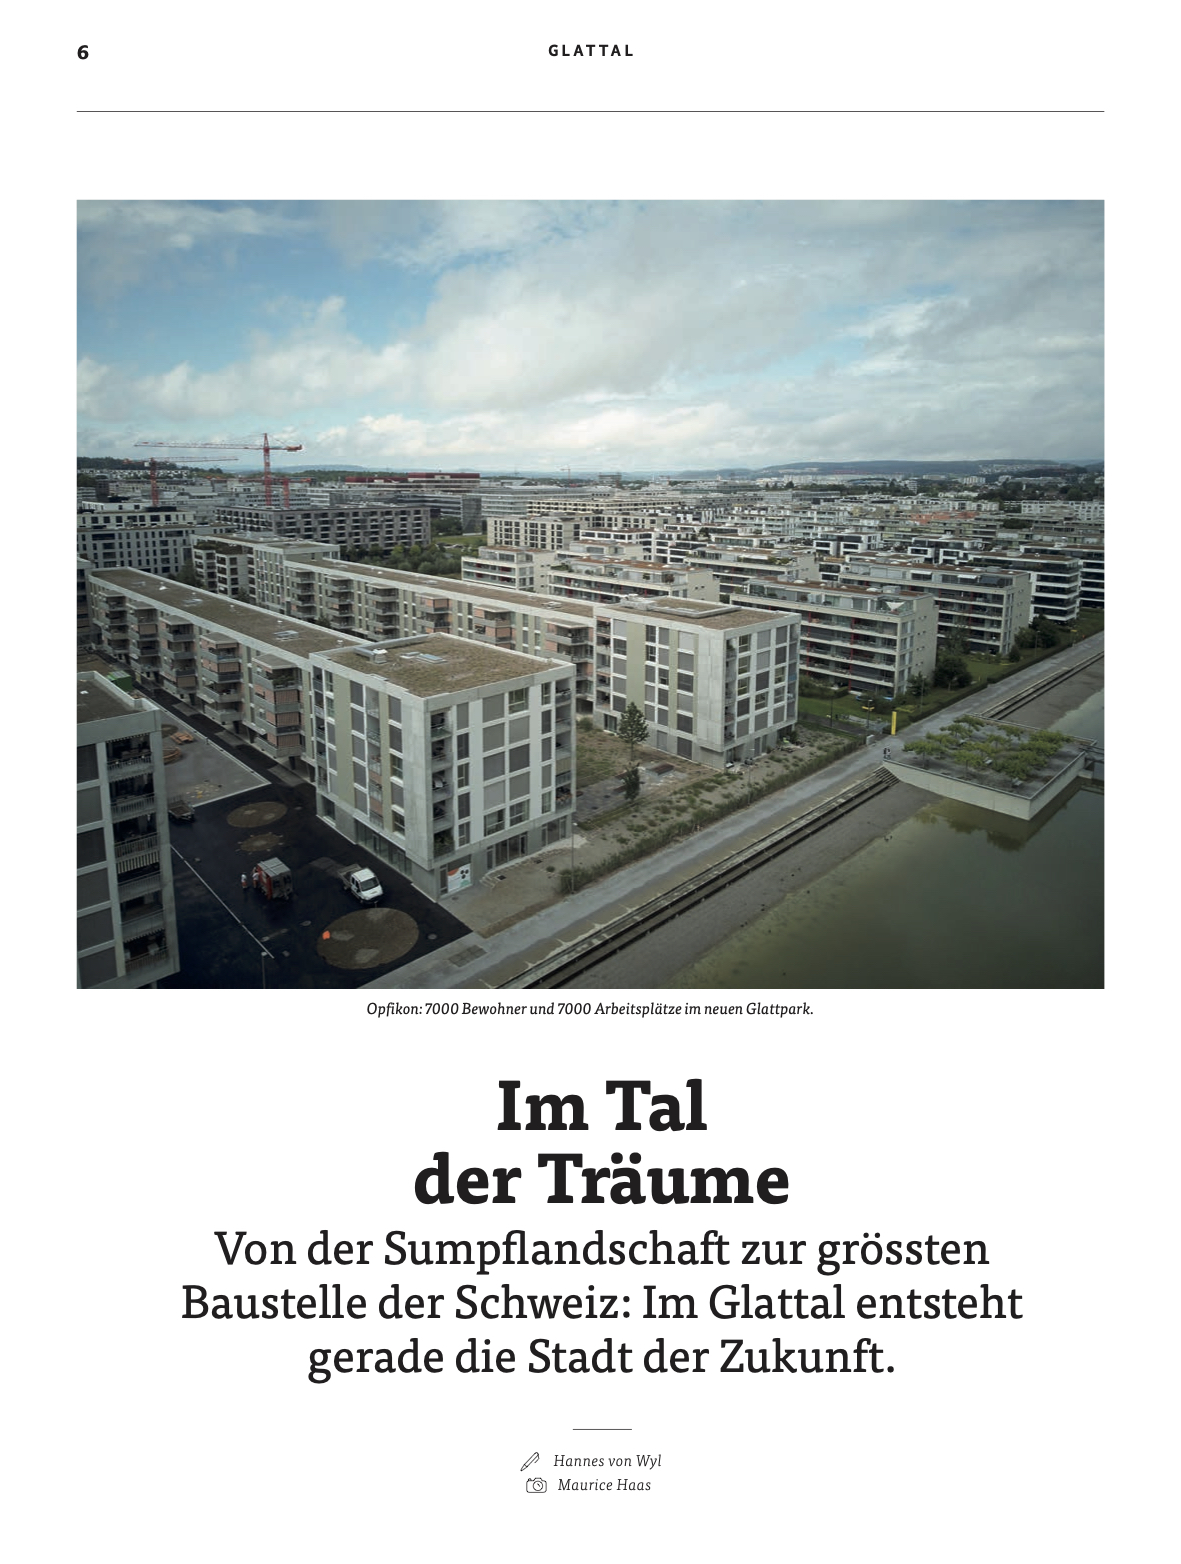 Storytelling | Texte, die überzeugen, Journalismus, Text: Konzept & Umsetzung in Vordere Vorstadt 15, Aarau, Schweiz